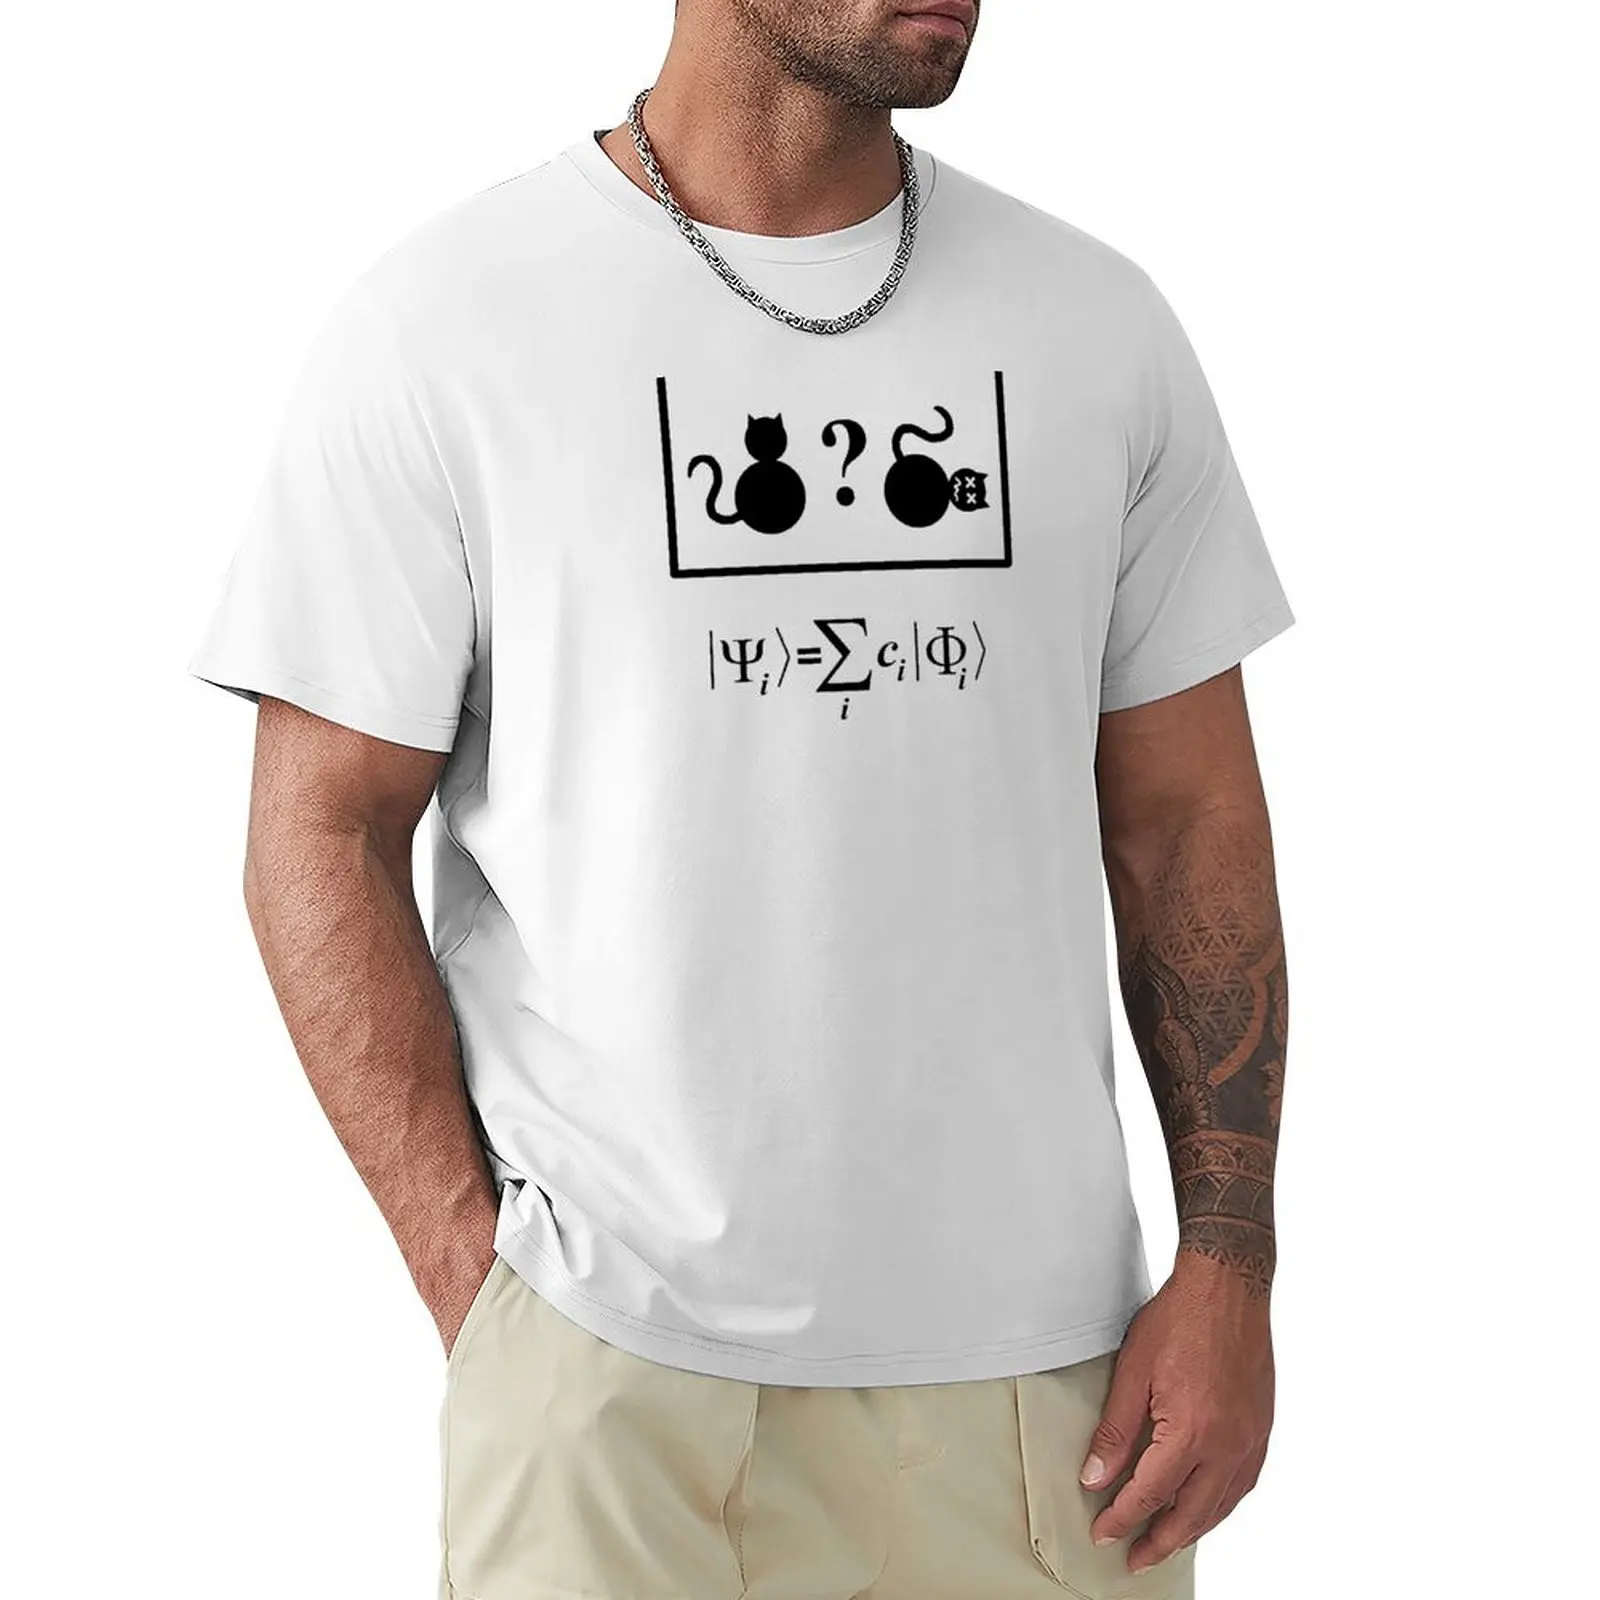 

Футболка Schroedingers с изображением кота, тяжелые, Винтажный дизайн на заказ, собственные заготовки, тяжелые футболки для мужчин